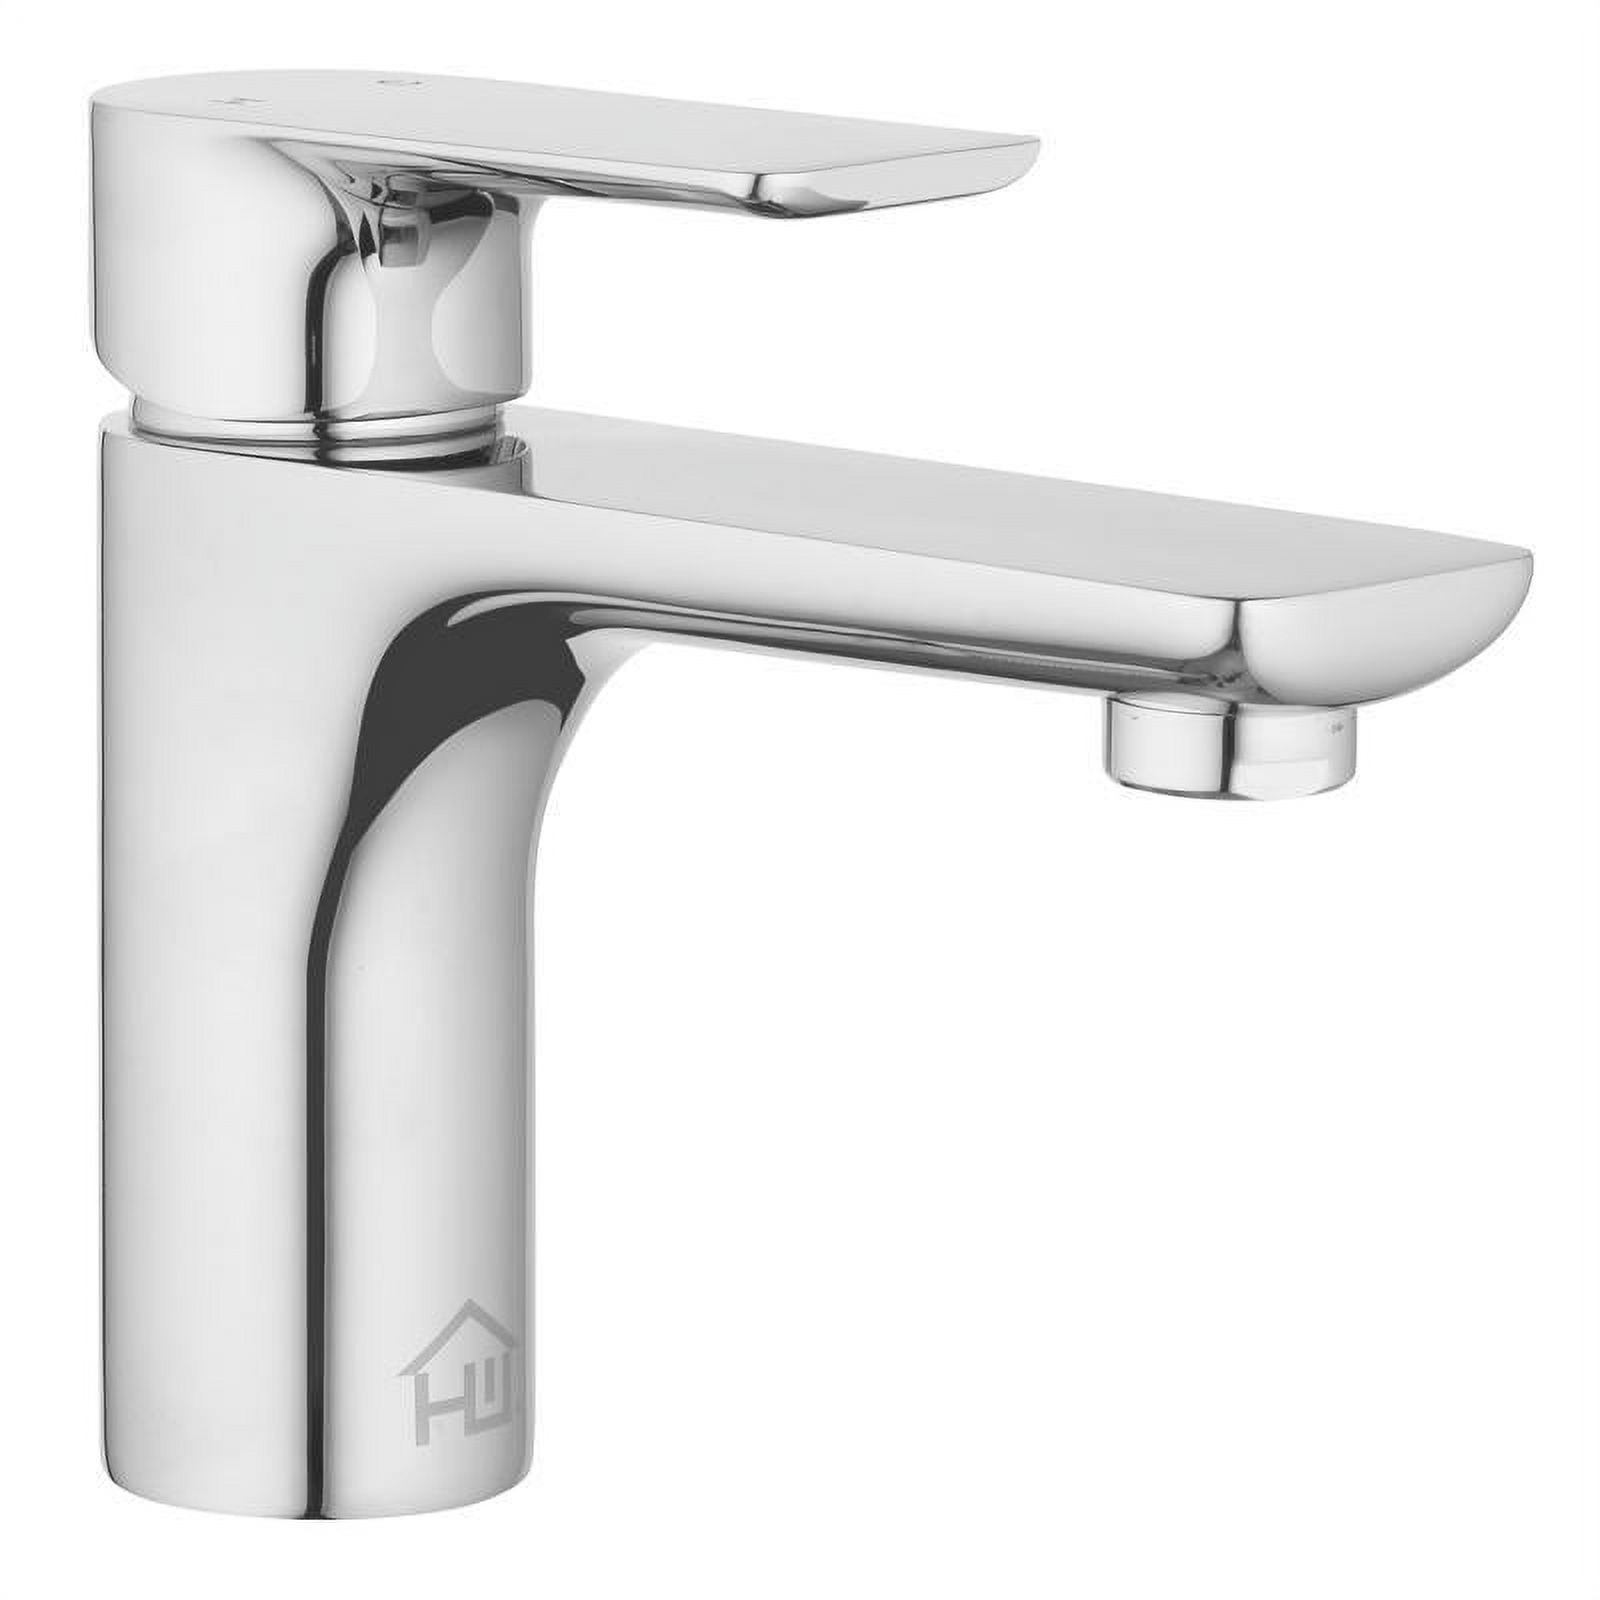 Homewerks Worldwide 4000626 2 in. Motion Sensing Single-Handle Bathroom Sink Faucet, Chrome - image 2 of 10